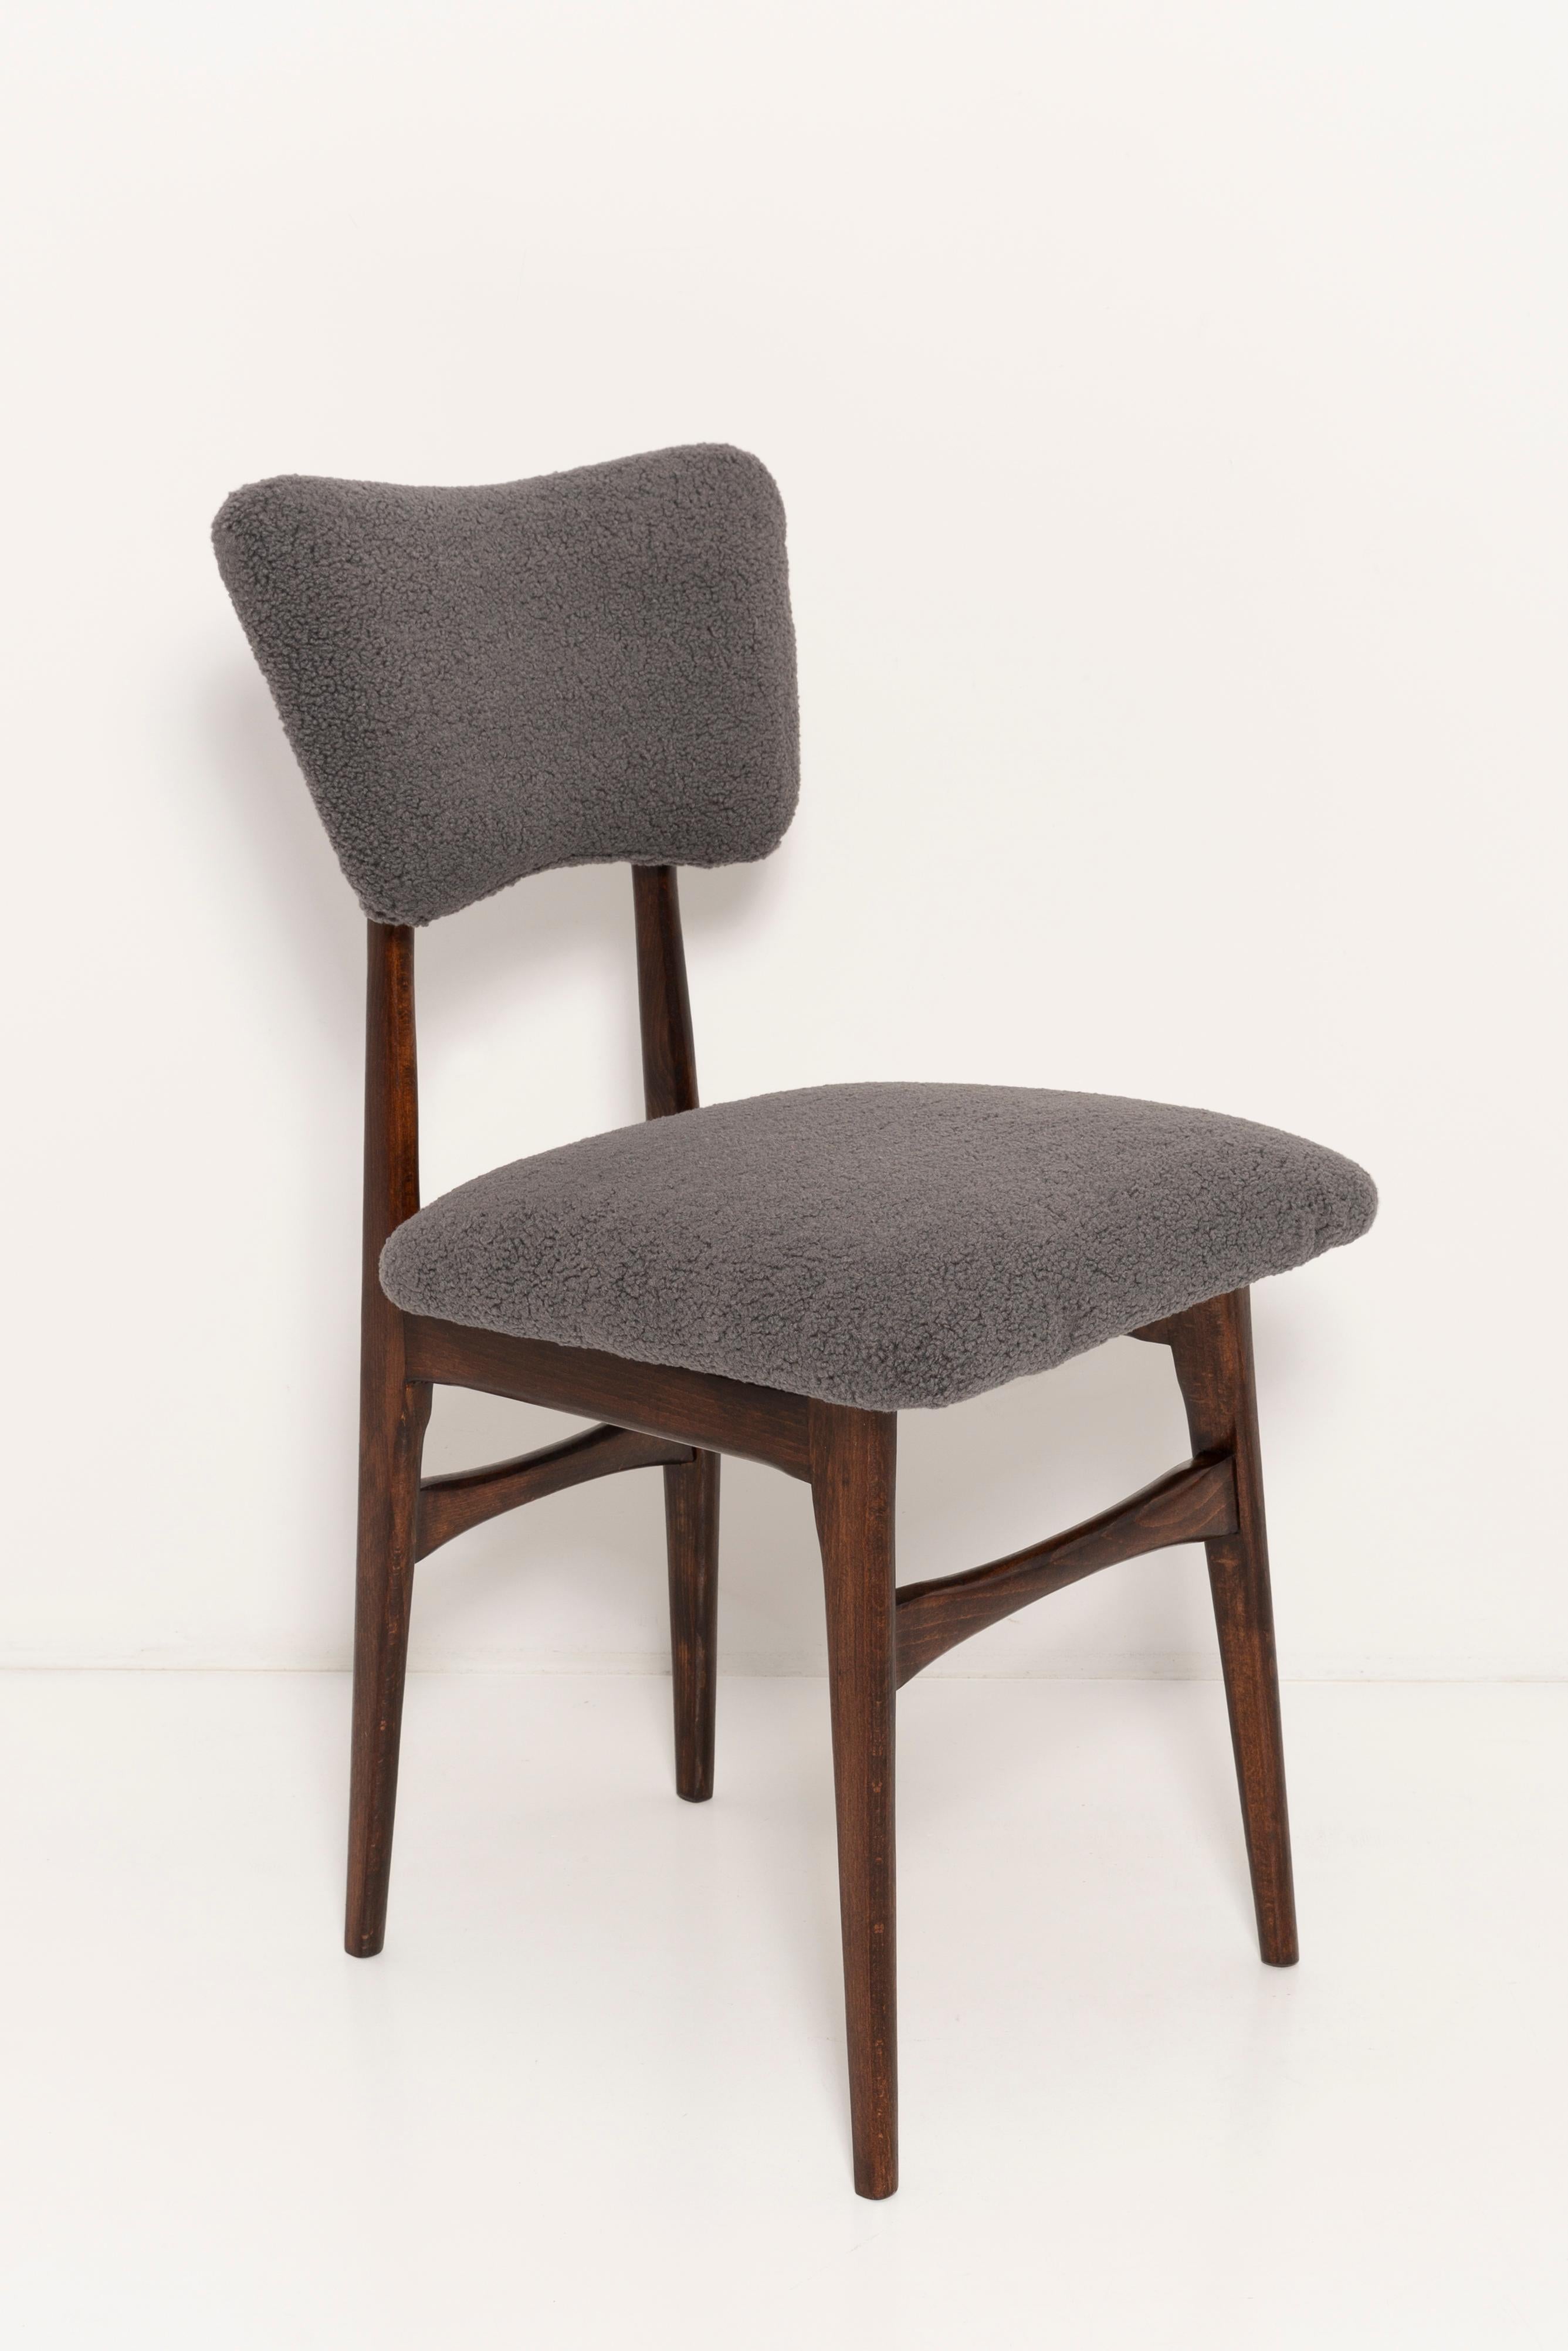 Chaises conçues par le professeur Rajmund Halas. Fabriqué en bois de hêtre. Les chaises ont été entièrement rénovées et les boiseries ont été rafraîchies. L'assise et le dossier sont habillés d'un tissu bouclé gris foncé (couleur 07), durable et